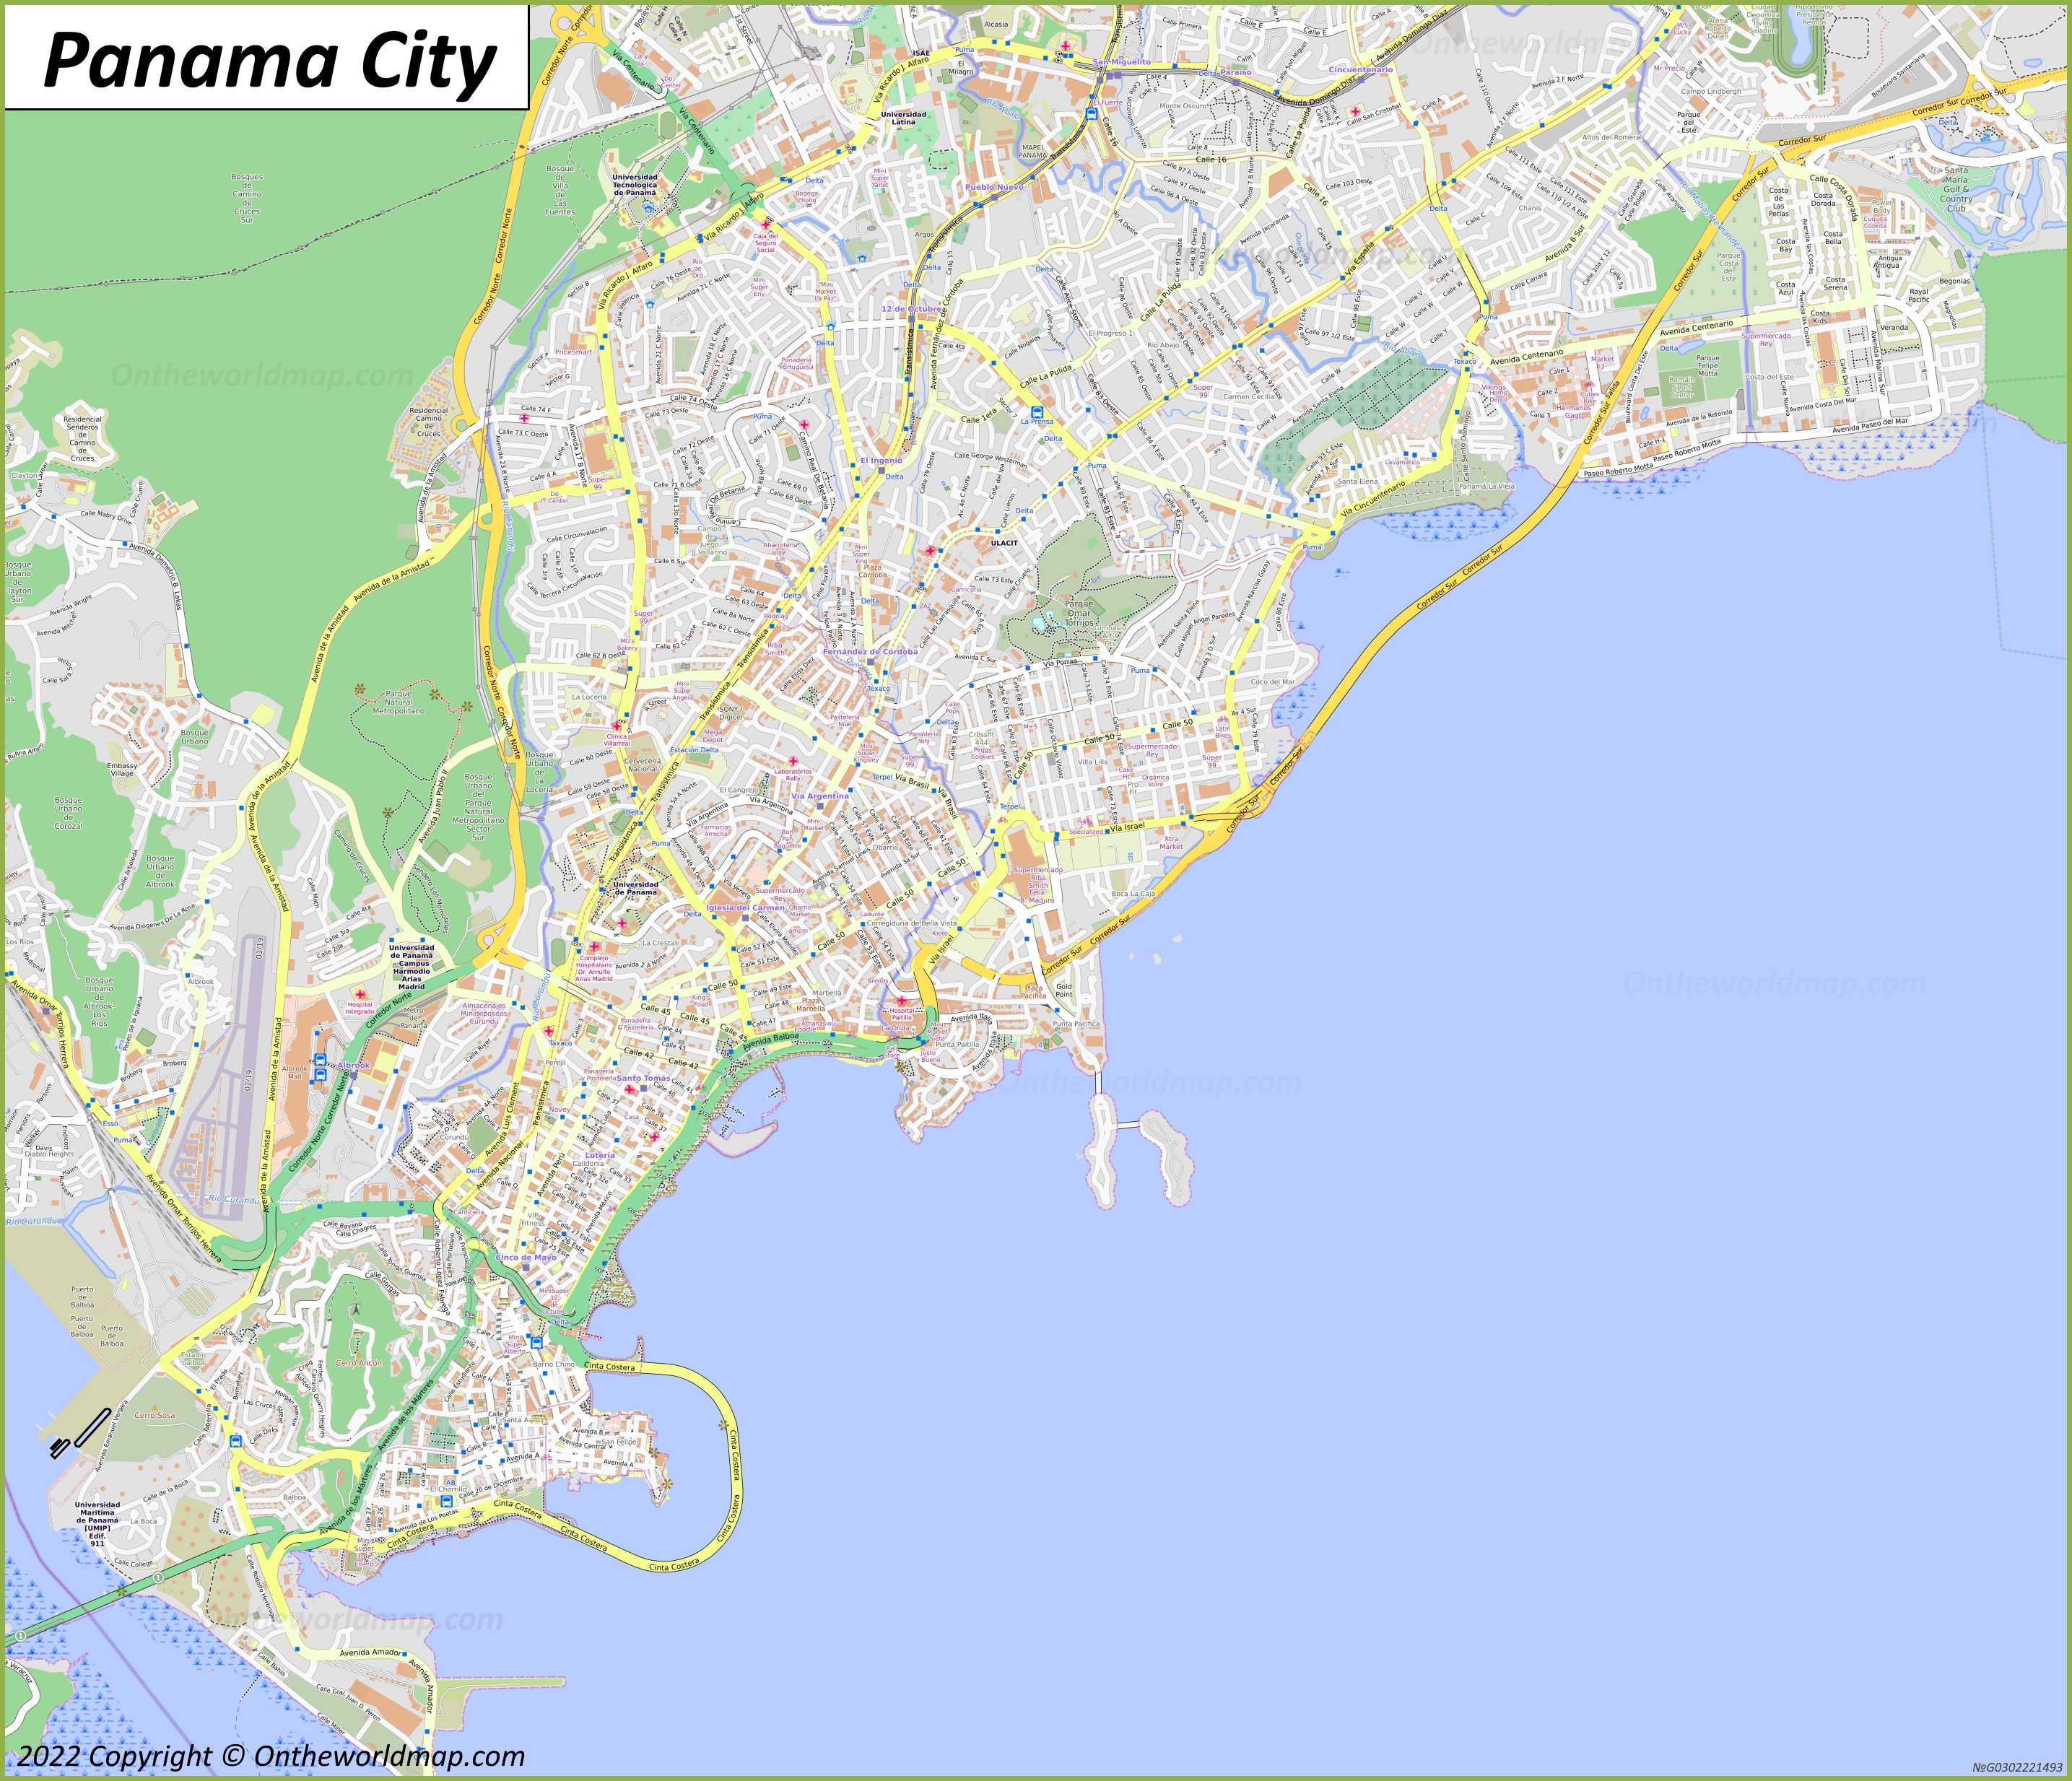 Mapa de Ciudad de Panamá